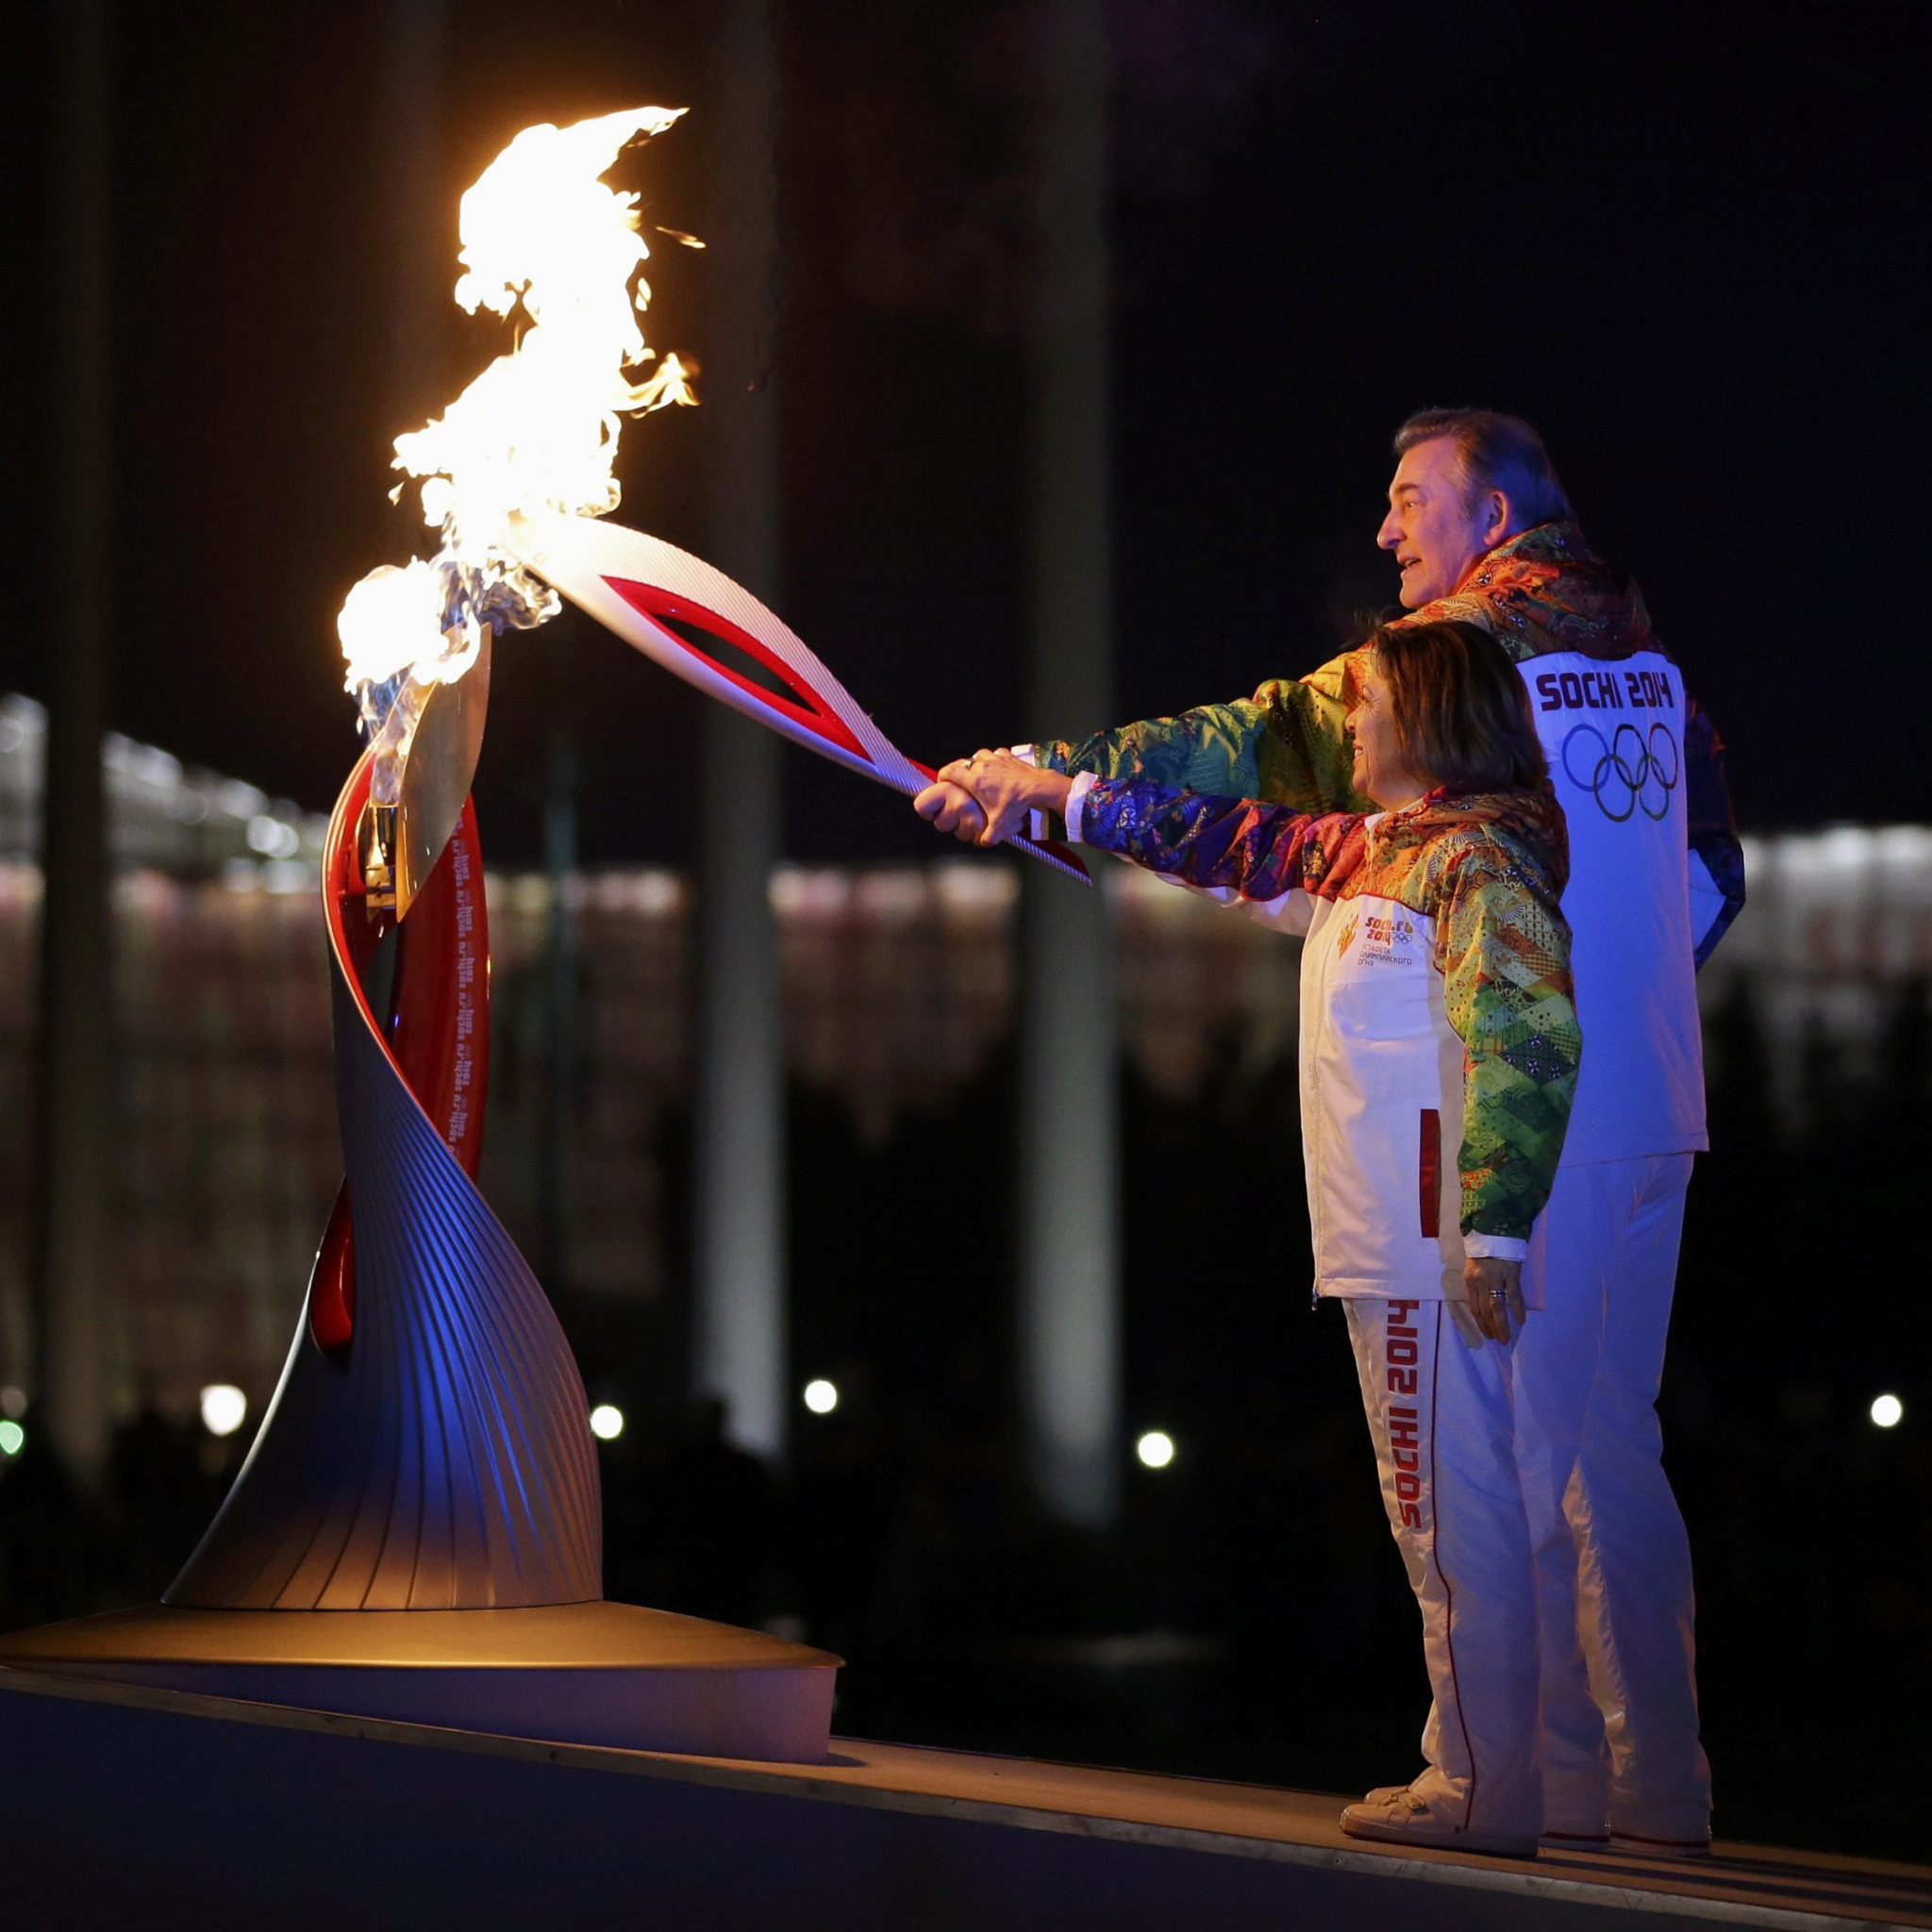 Олимпийский огонь Сочи 2014. Факел олимпийского огня Сочи 2014. Открытие Олимпийских игр в Сочи 2014. Факел современного огня современных игр зажигается